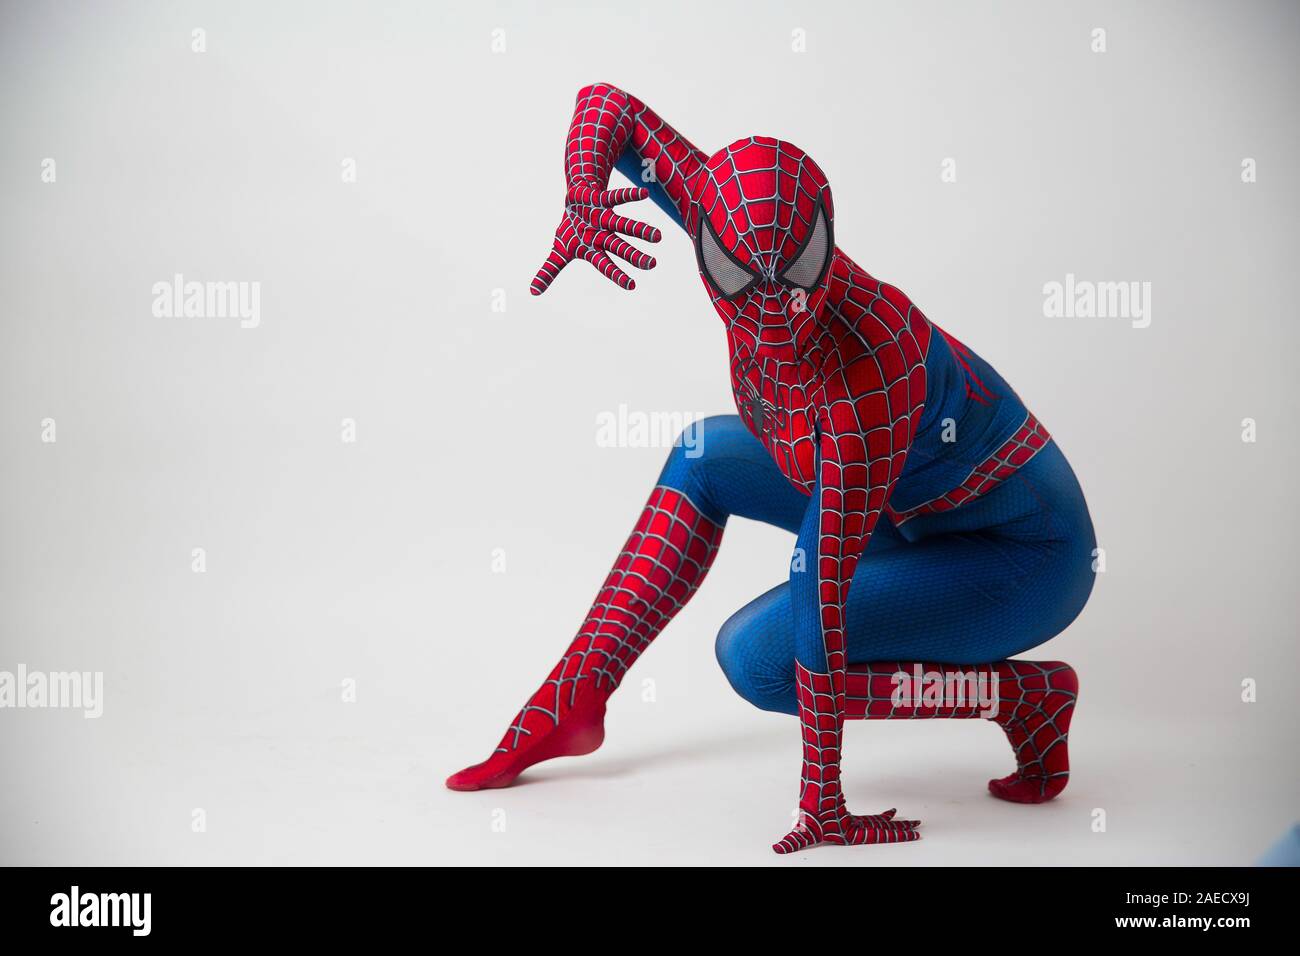 1 December 2019. Israel, tel Aviv. spider-man posing on white background Stock Photo